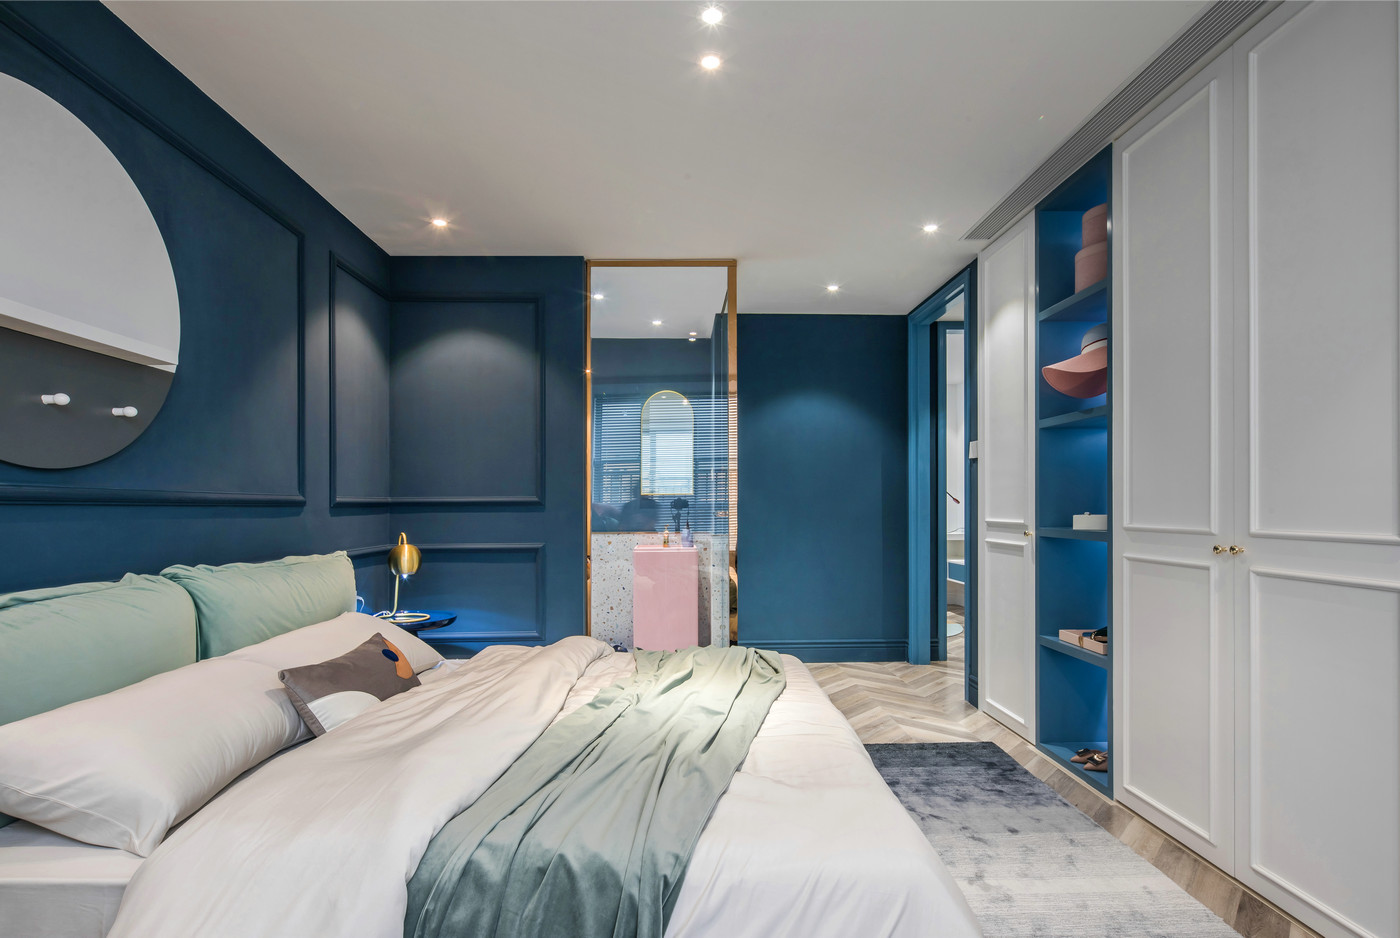 蓝色背景墙深邃宁静，床头采用护墙板设计，白色衣柜优雅大气，文艺范儿十足。